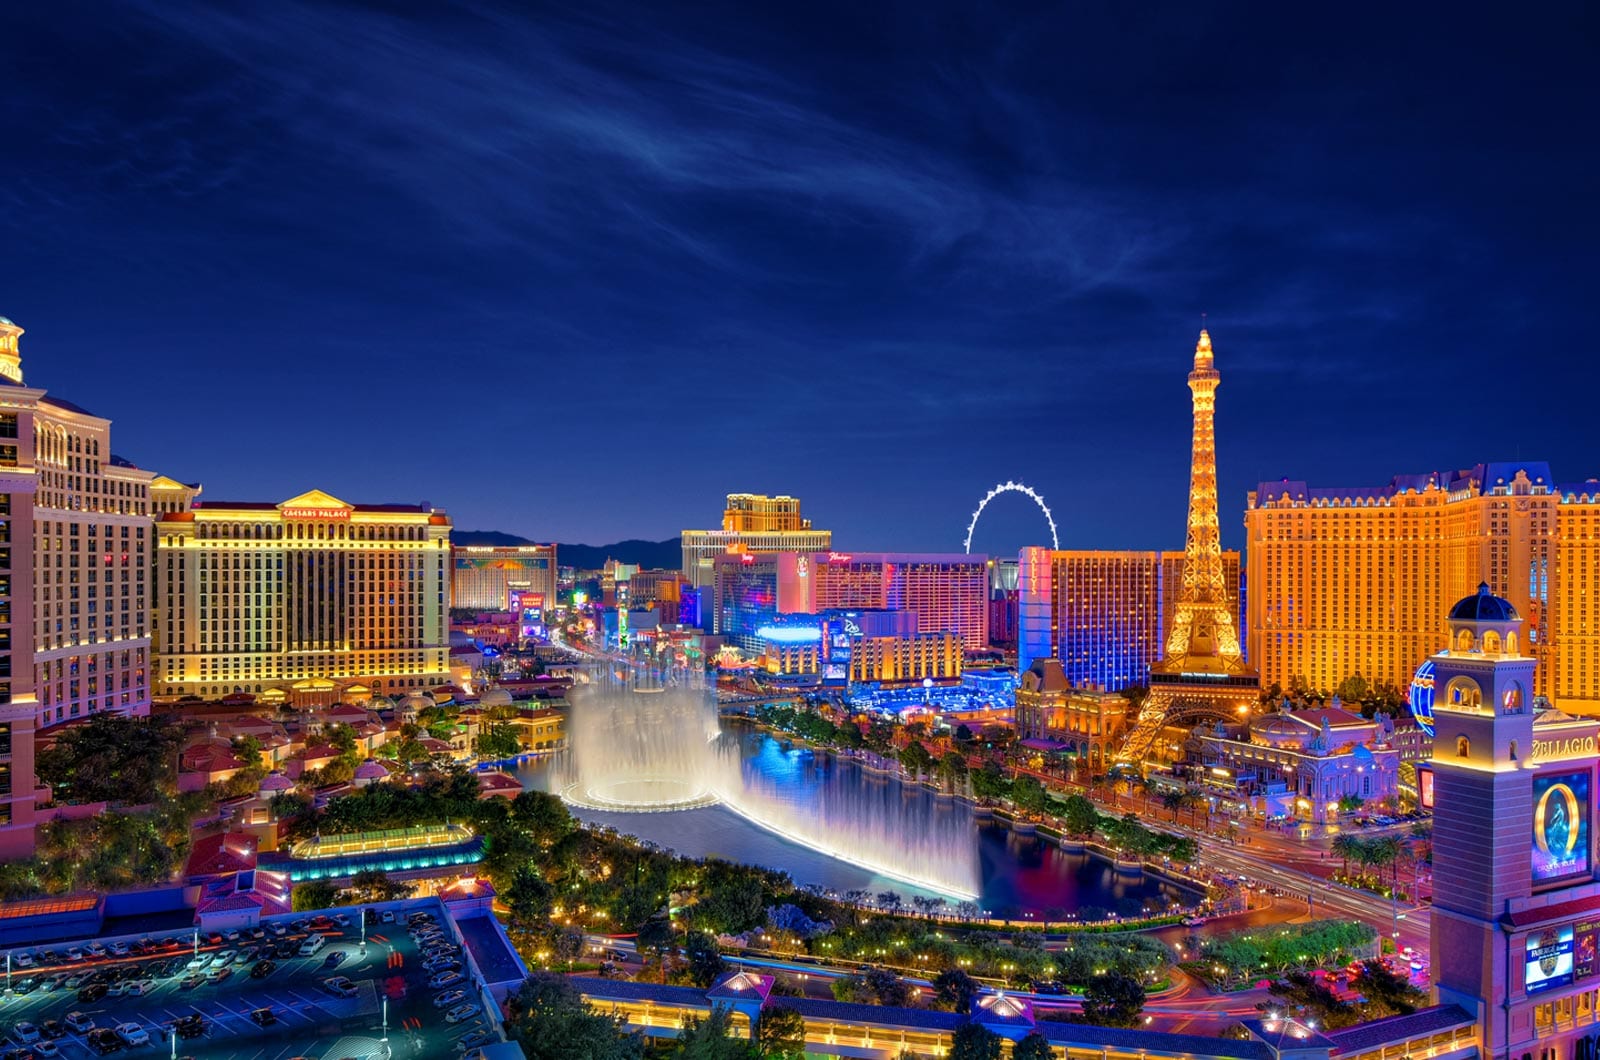 Las Vegas Featured Image | Las Vegas Virtual Tour Photographer | Las Vegas Aerial Photography Services | Las Vegas HDR Real Estate Photography Services | Las Vegas Matterport 3D Tours